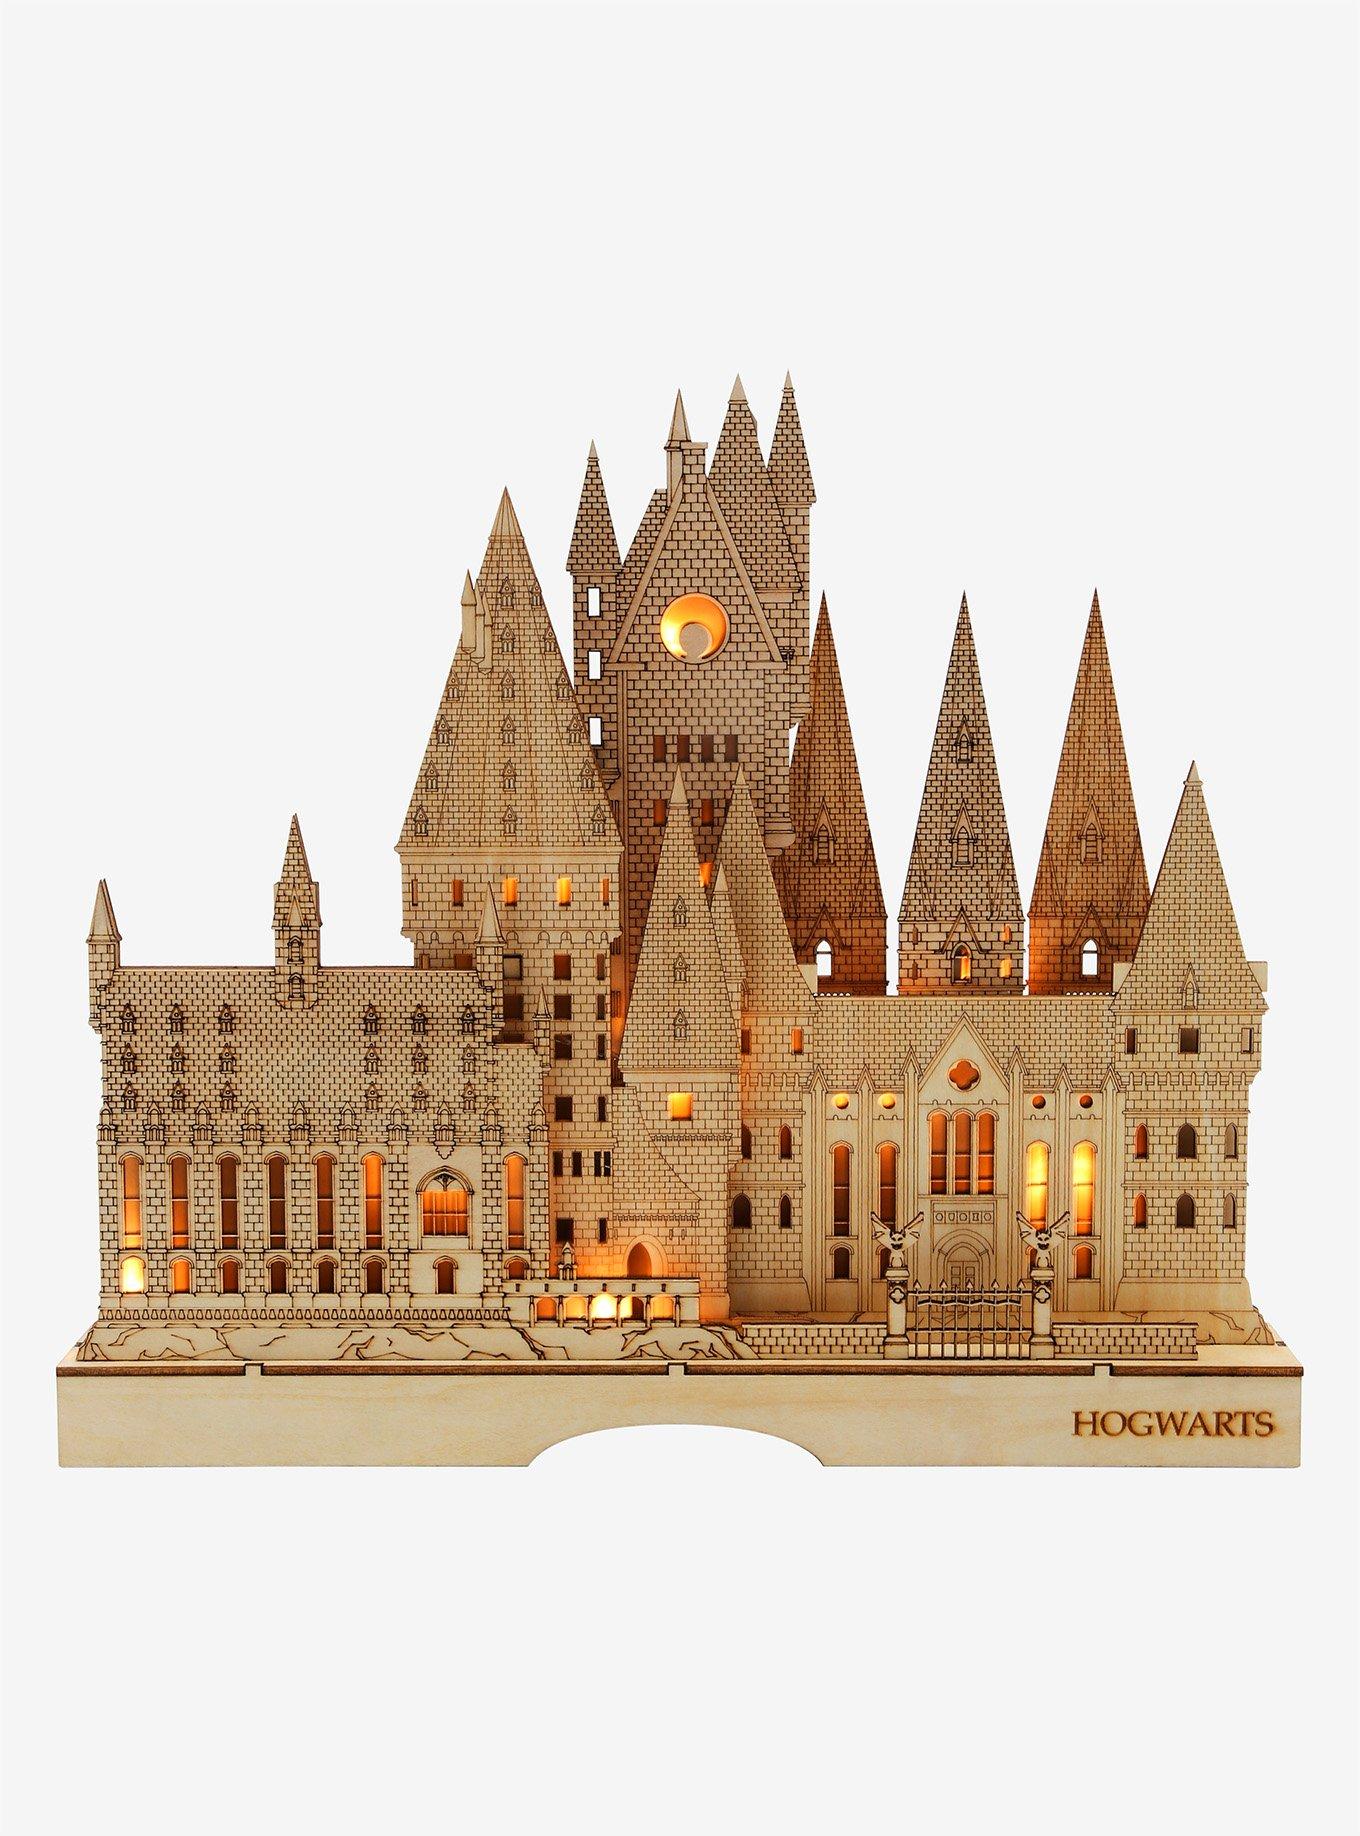 Harry Potter Hogwarts Wooden Model Figure, , hi-res